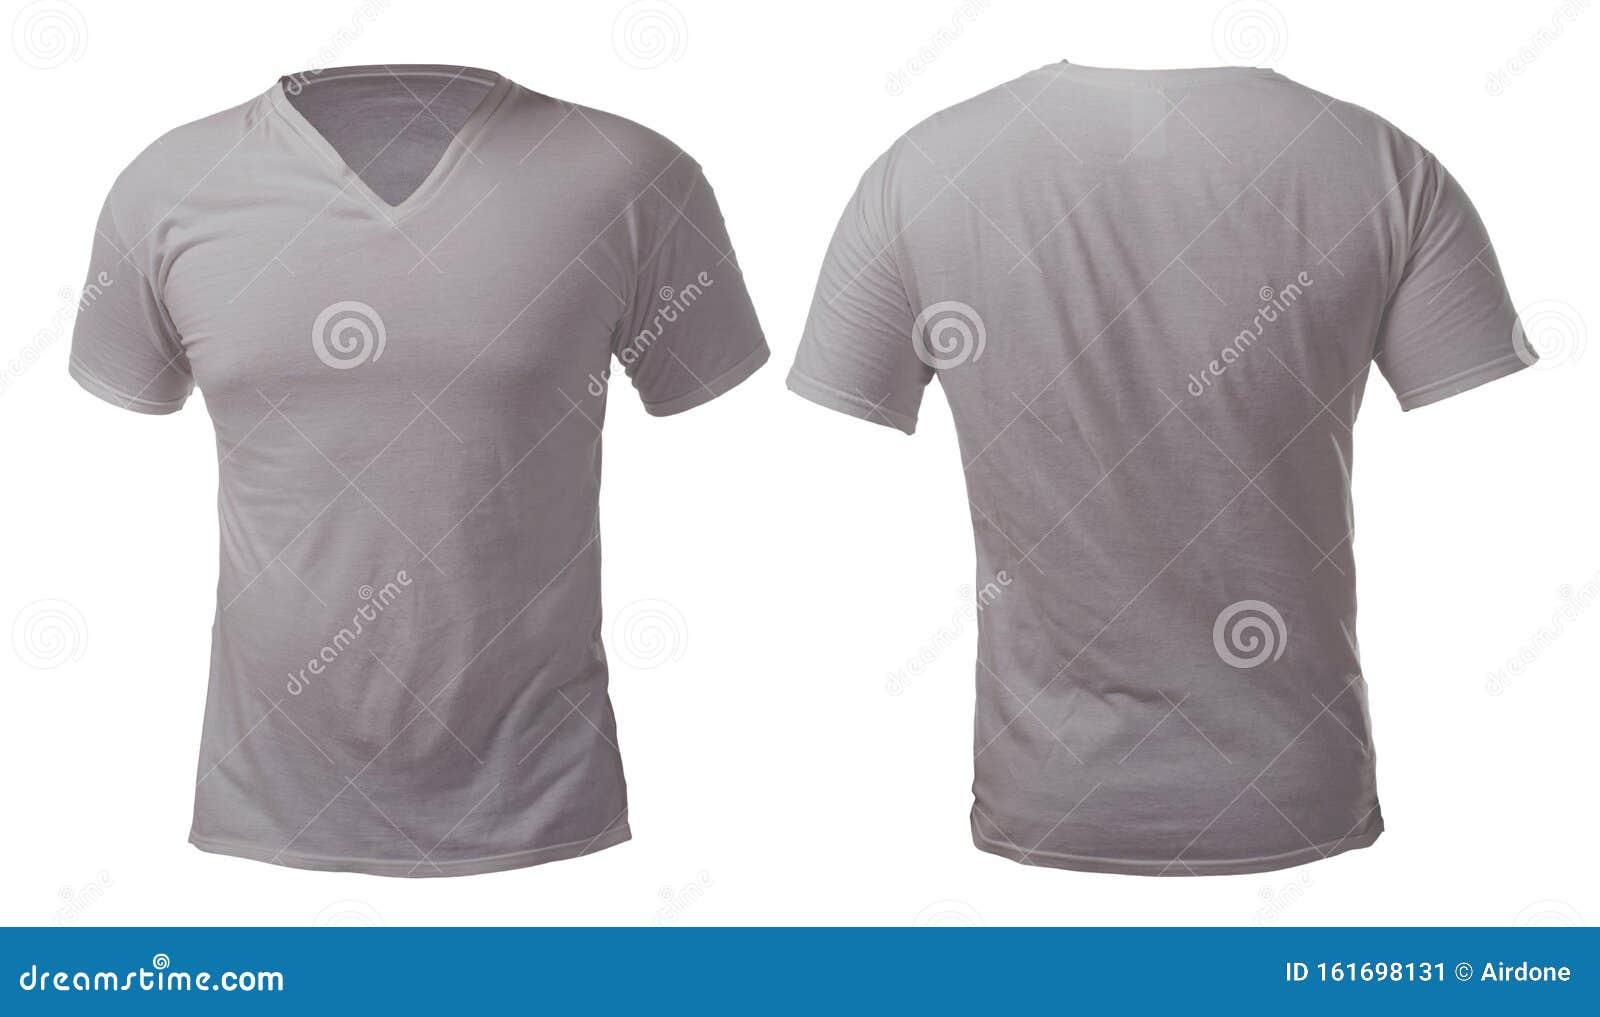 Download Grey V-Neck Shirt Design Template Stock Image - Image of ...